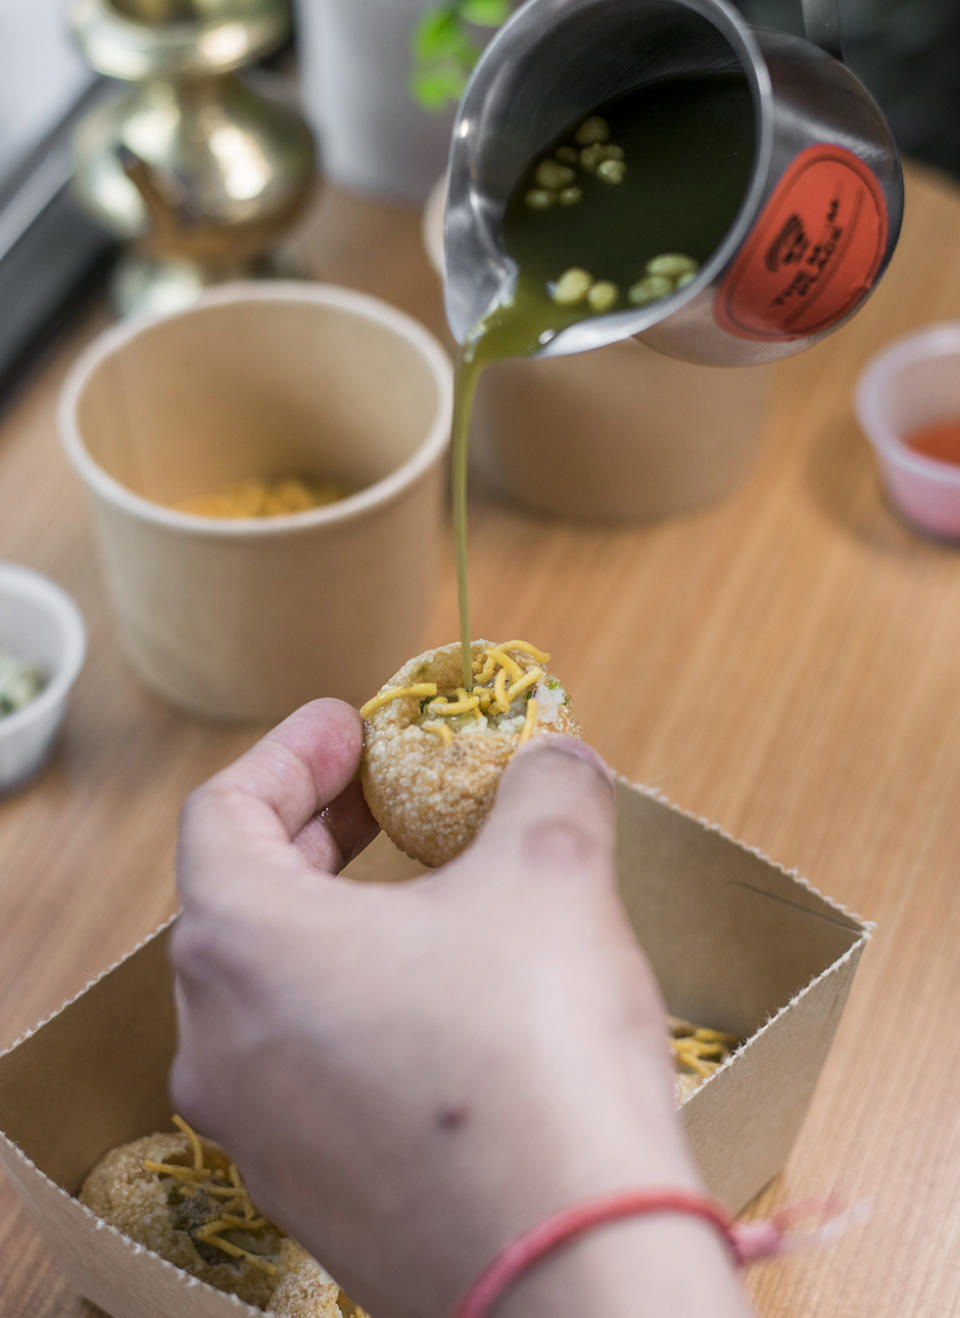 元朗美食︱印度兄弟主理 家庭式經營小店賣Momo餃+熱賣油炸波波